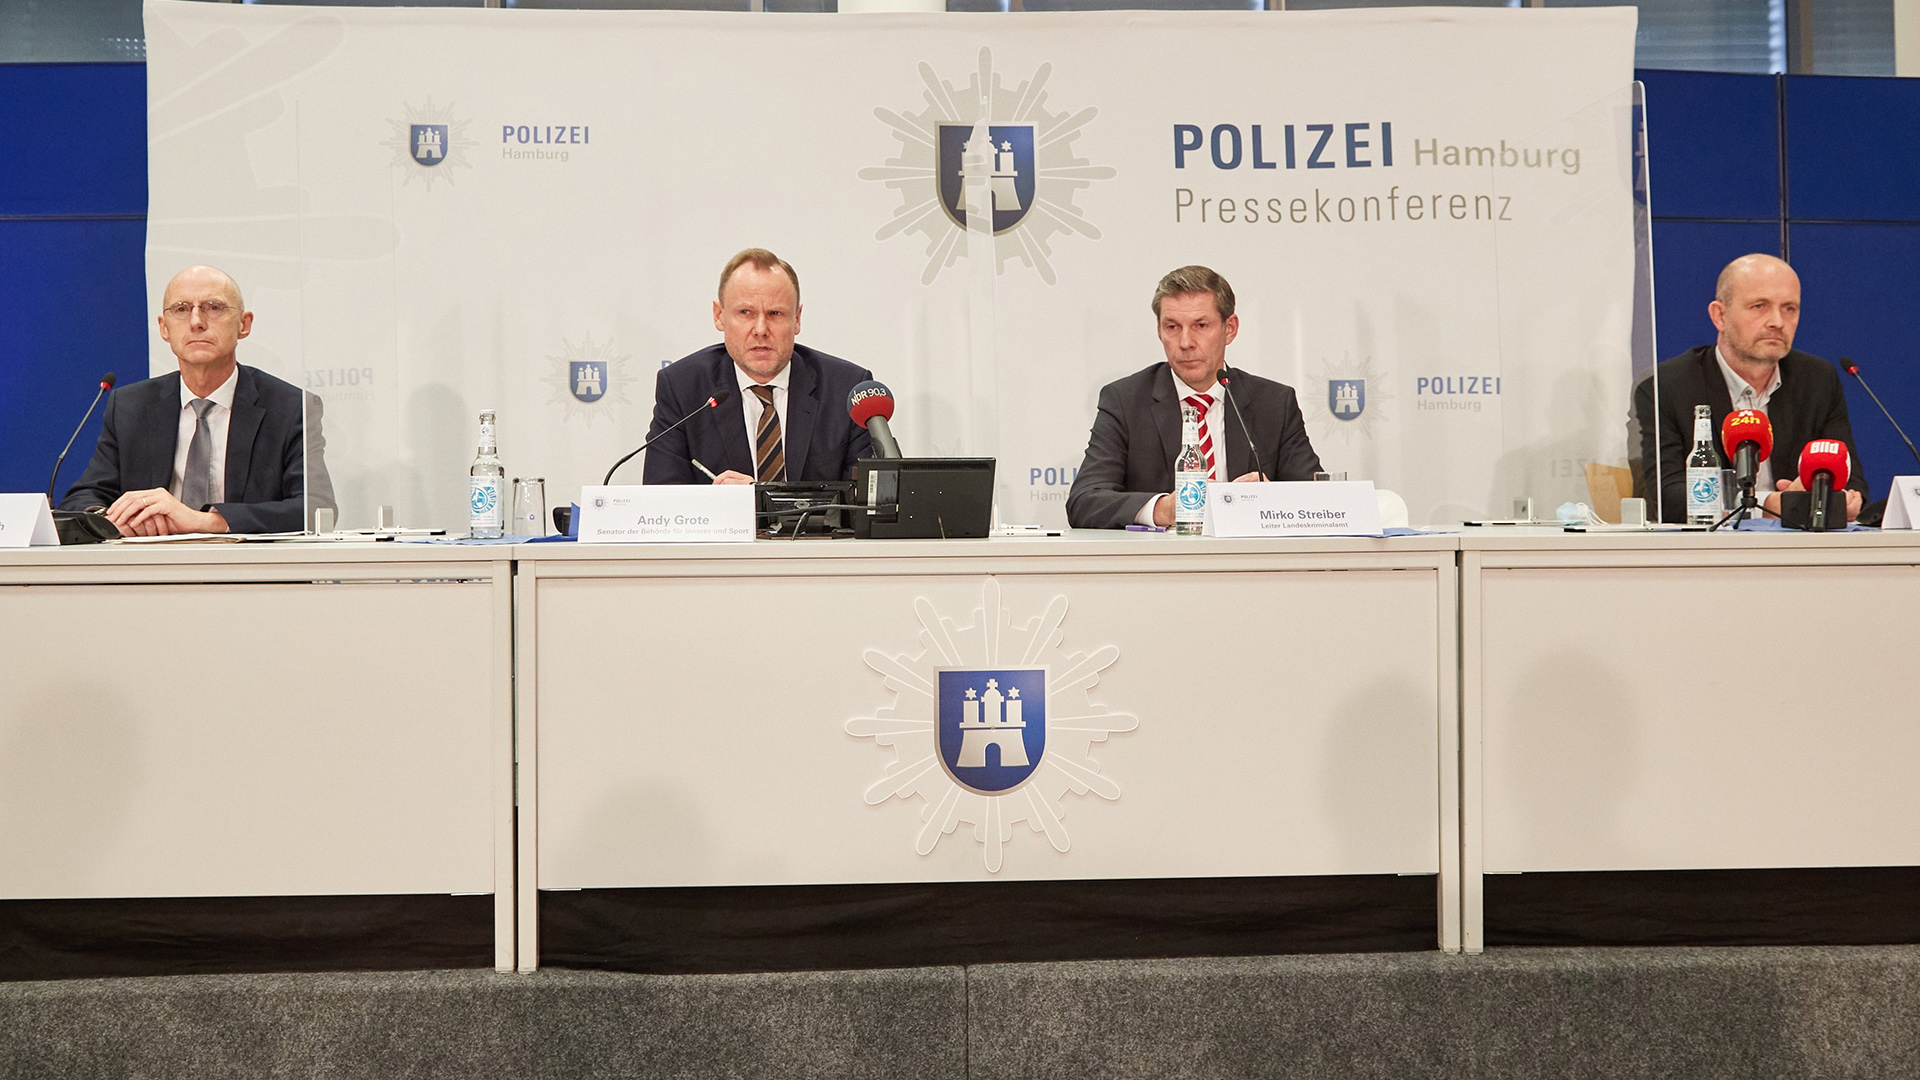 Jörg Fröhlich, Andy Grote, Mirko Streiber und Claus Cortnumme sprechen auf einer Pressekonferenz. | picture alliance/dpa